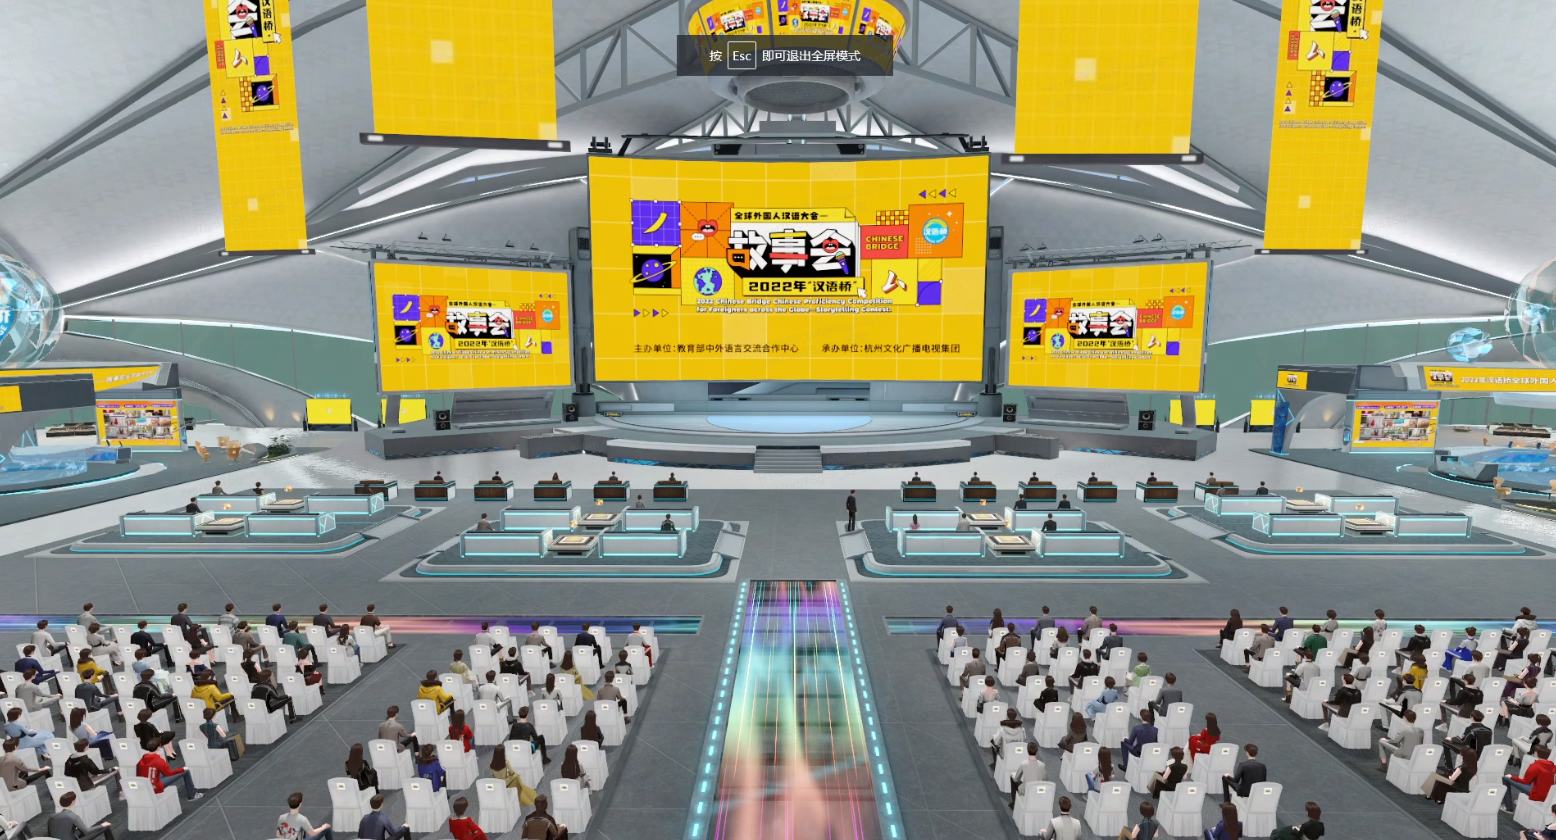 这是一张展现现代电子竞技场馆的图片，观众席围绕着中央舞台，大屏幕展示比赛信息，氛围科技感十足。